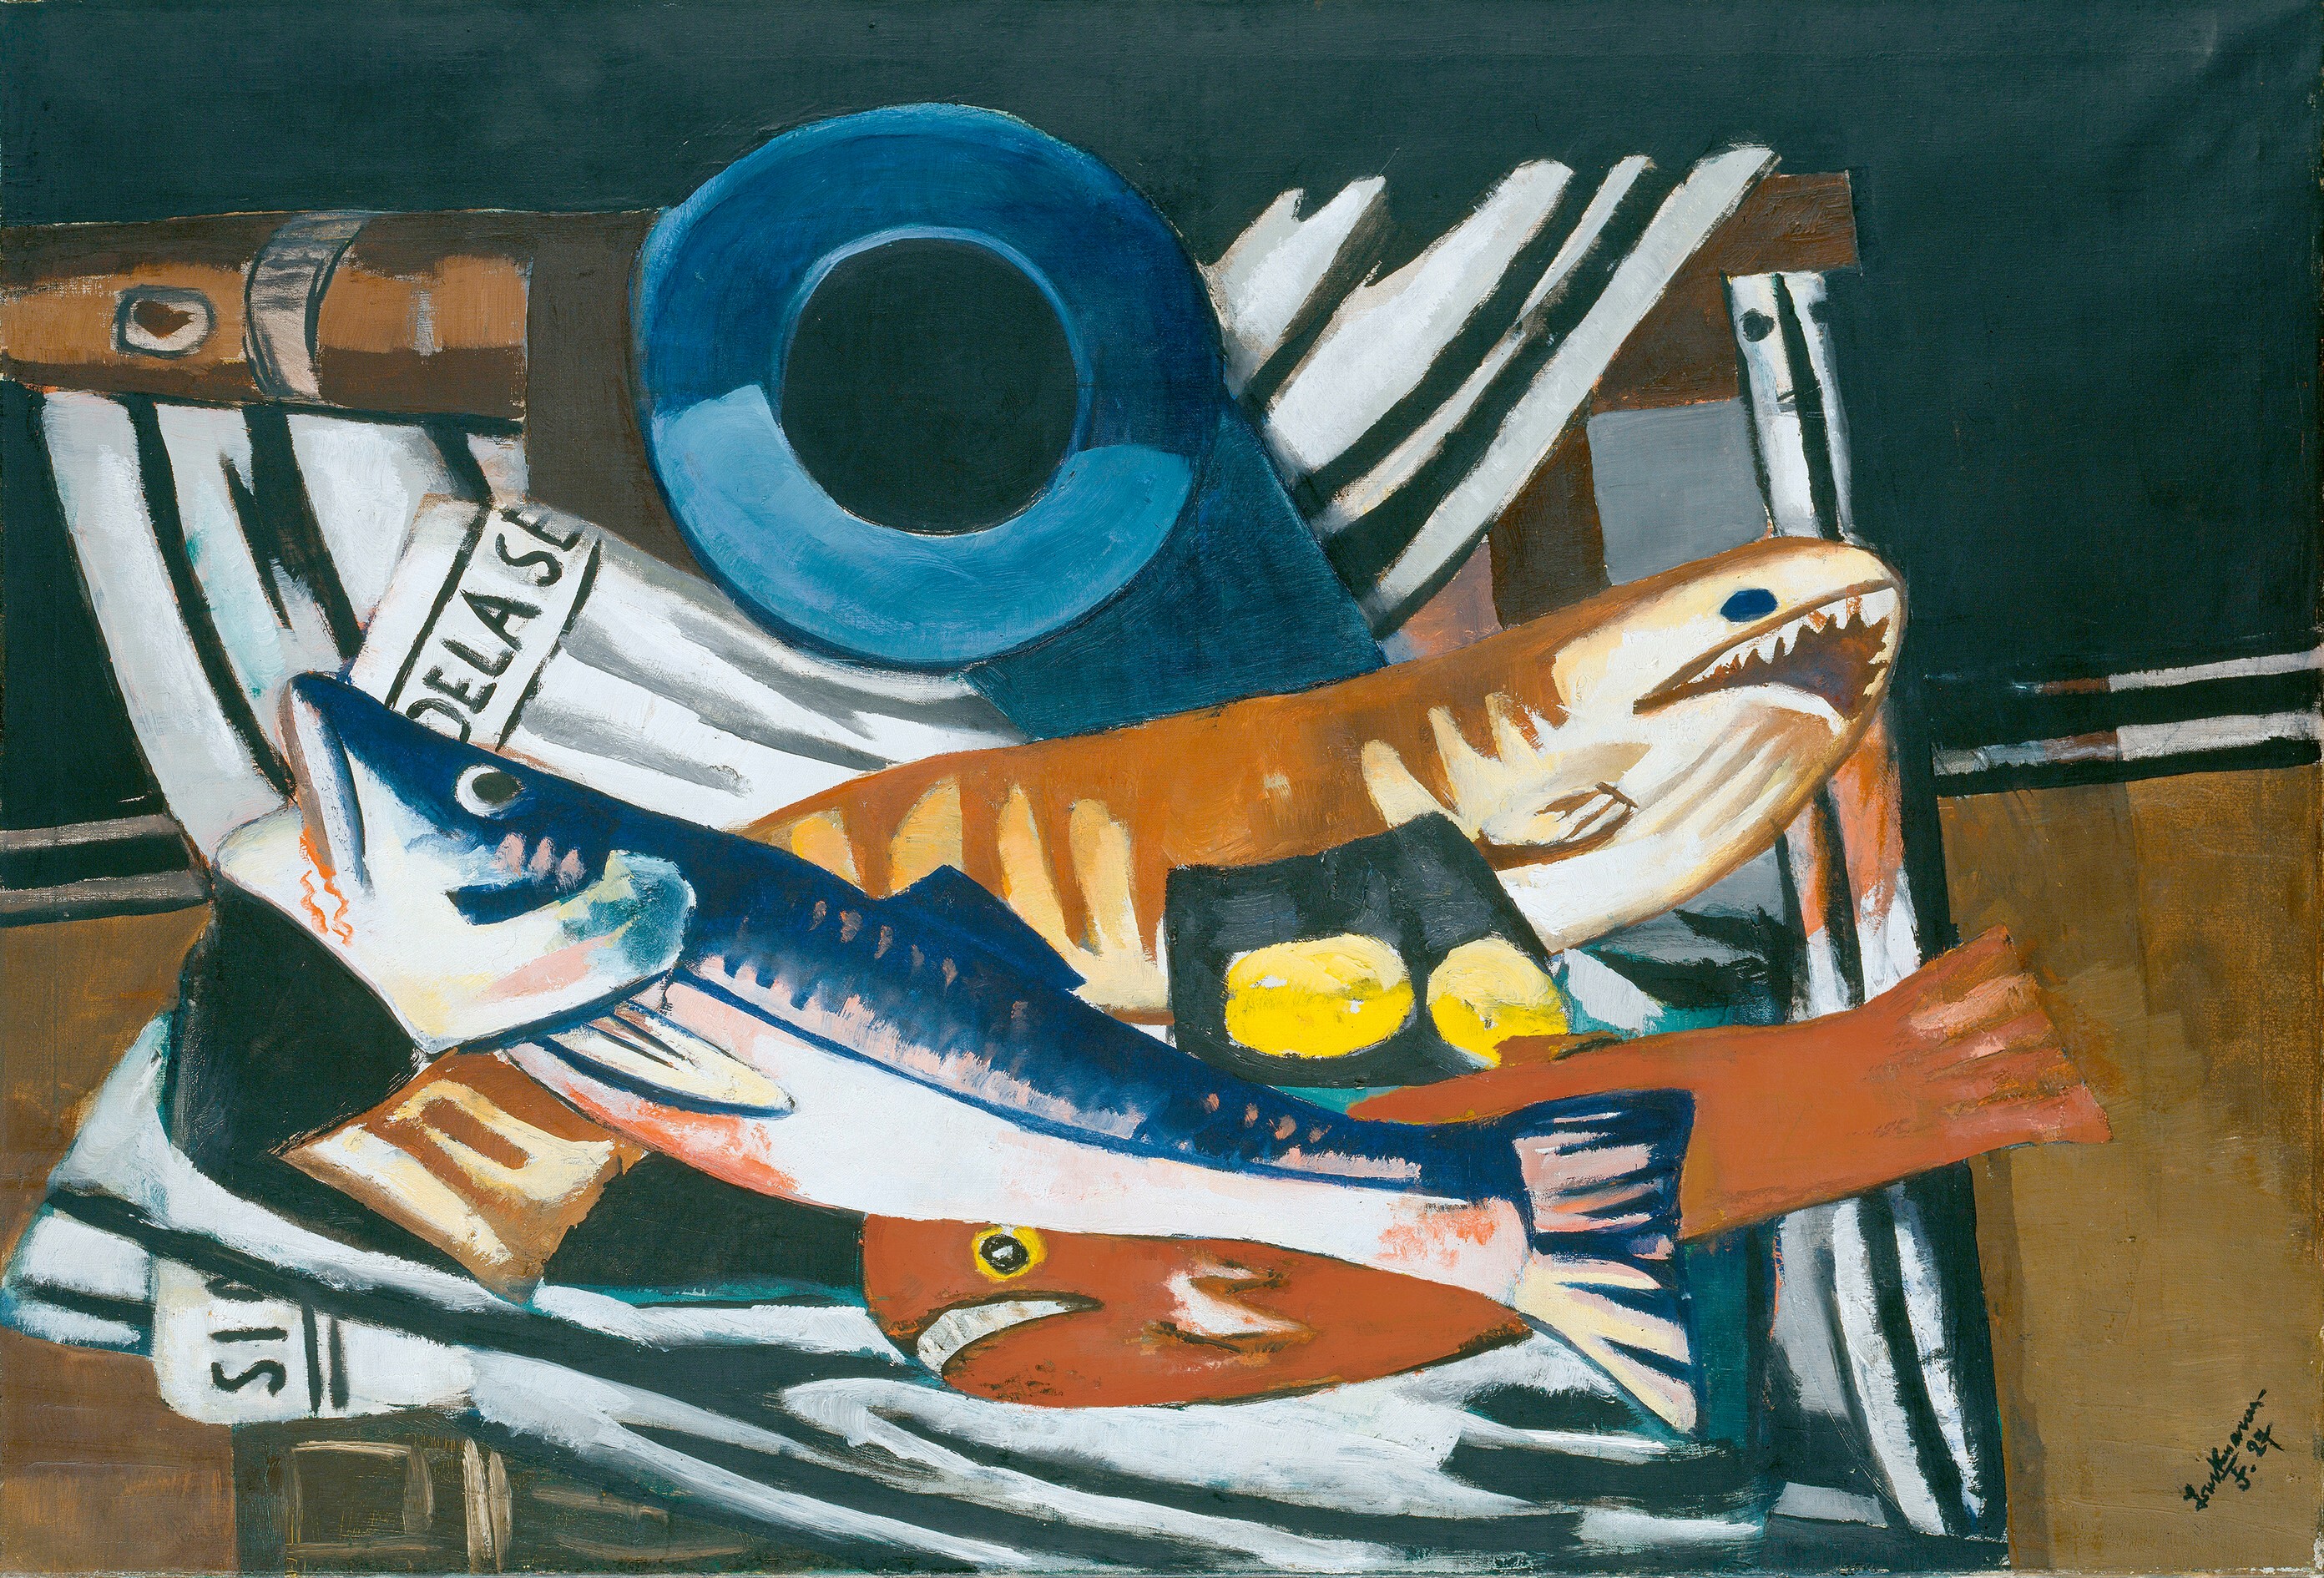 Max Beckmann,(1884-1950)  Großes Fisch-Stillleben, 1927  Öl auf Leinwand, 96 x 140,5 cm  Hamburger Kunsthalle   © VG Bild-Kunst, 2013  Photo: Elke Walford 